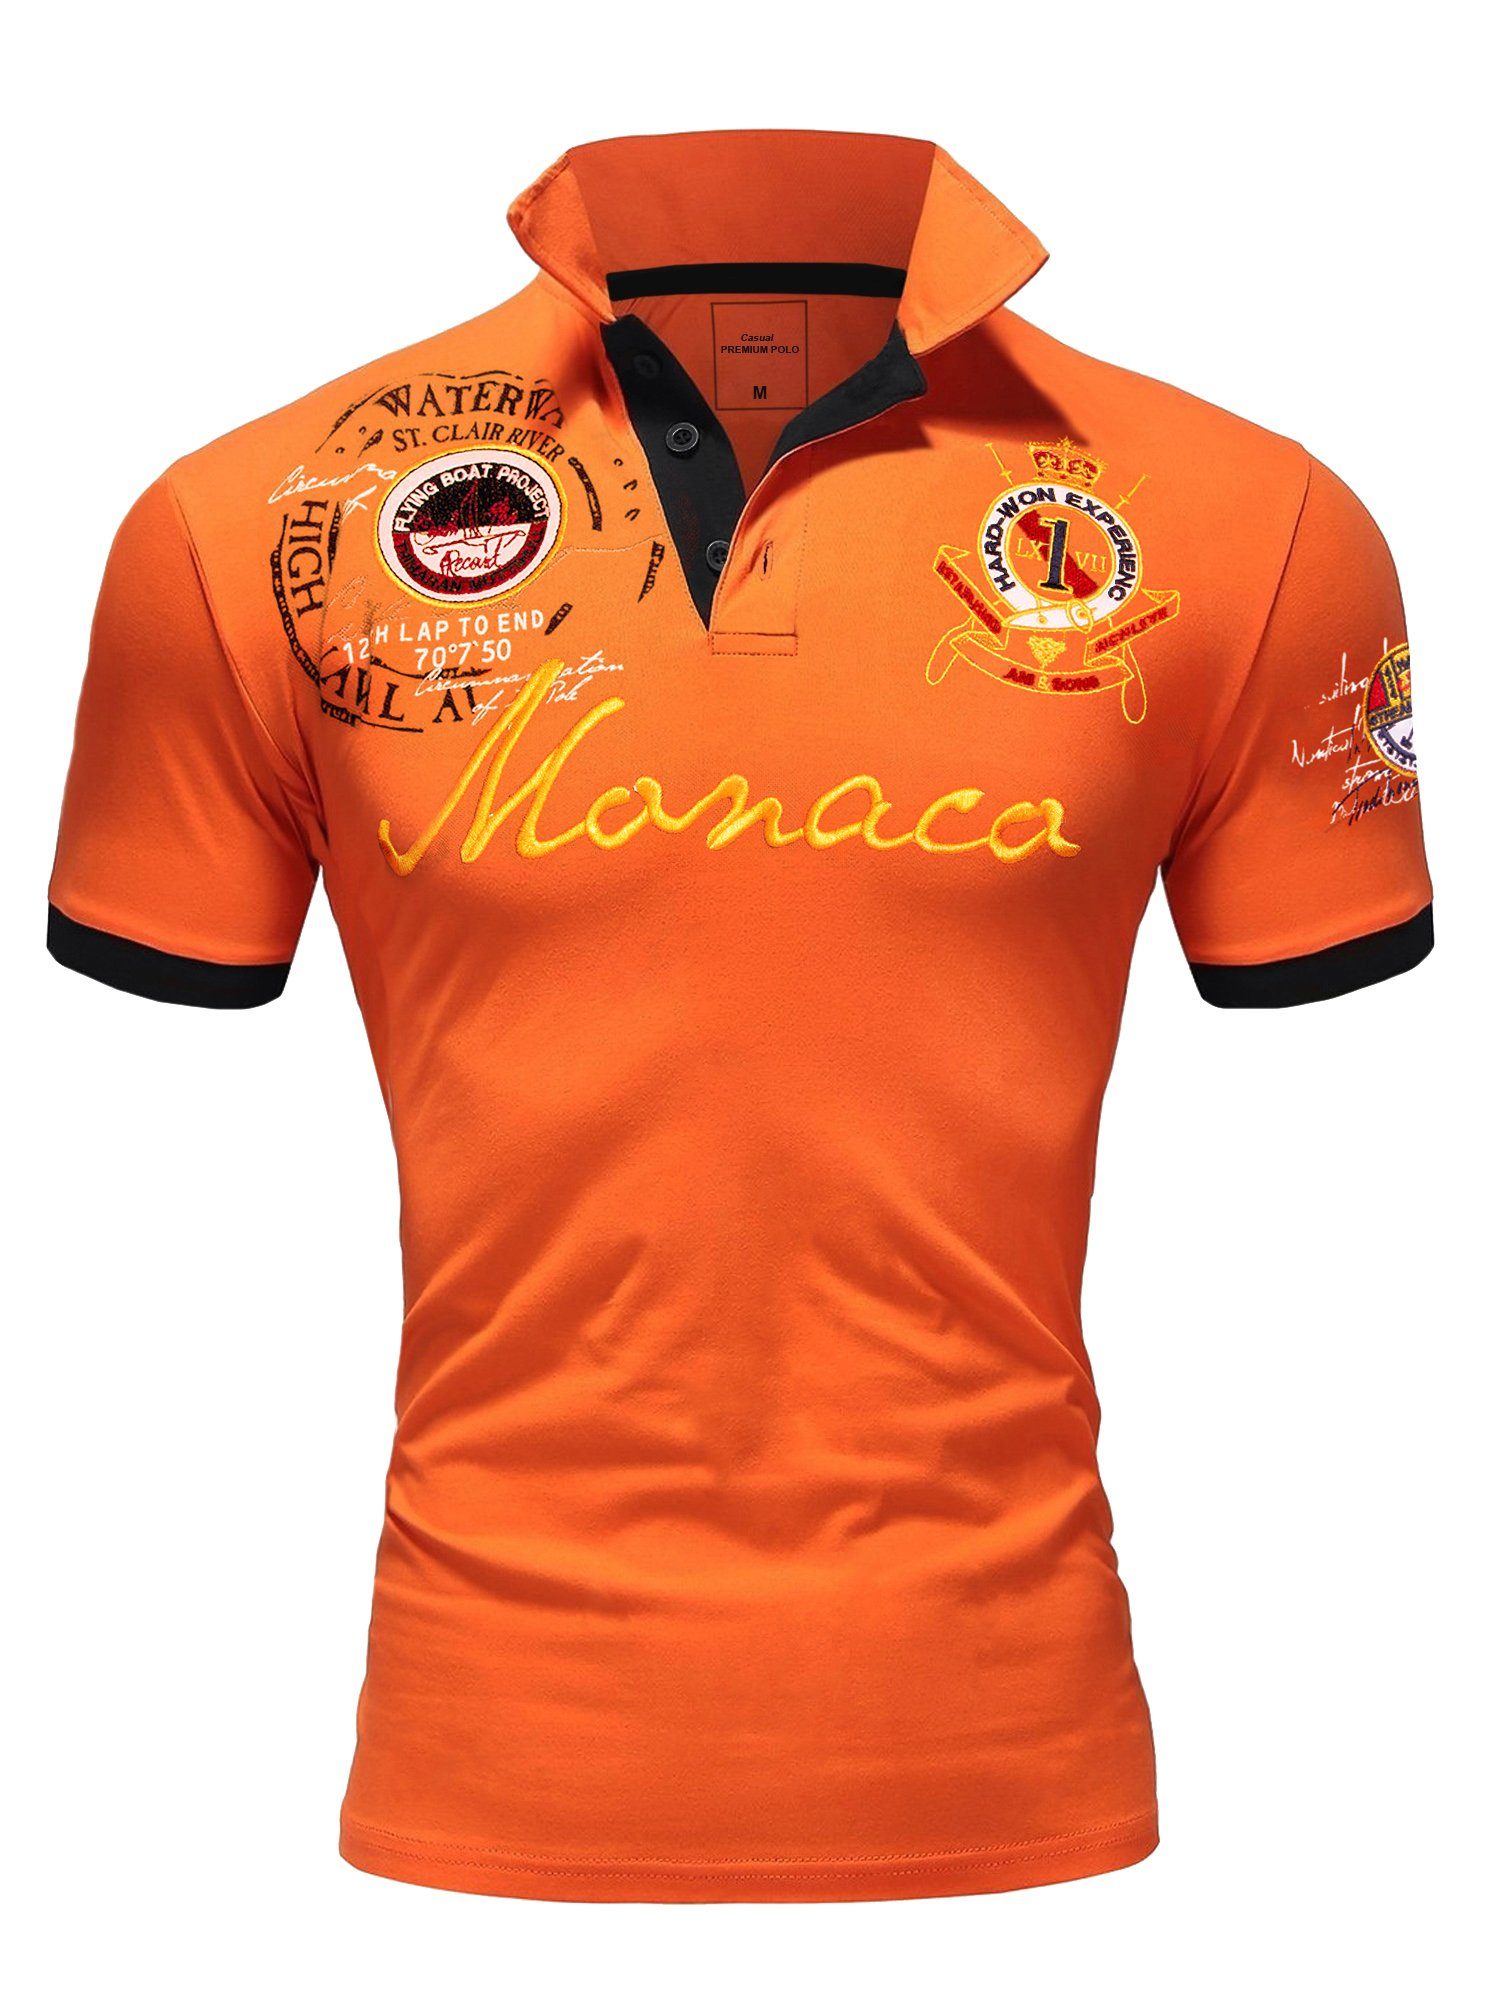 Kontrast T-Shirt 2.0 Poloshirt Orange Monaco Polohemd Stickerei Stickerei mit Monaco Amaci&Sons Basic Poloshirt Herren Kurzarm